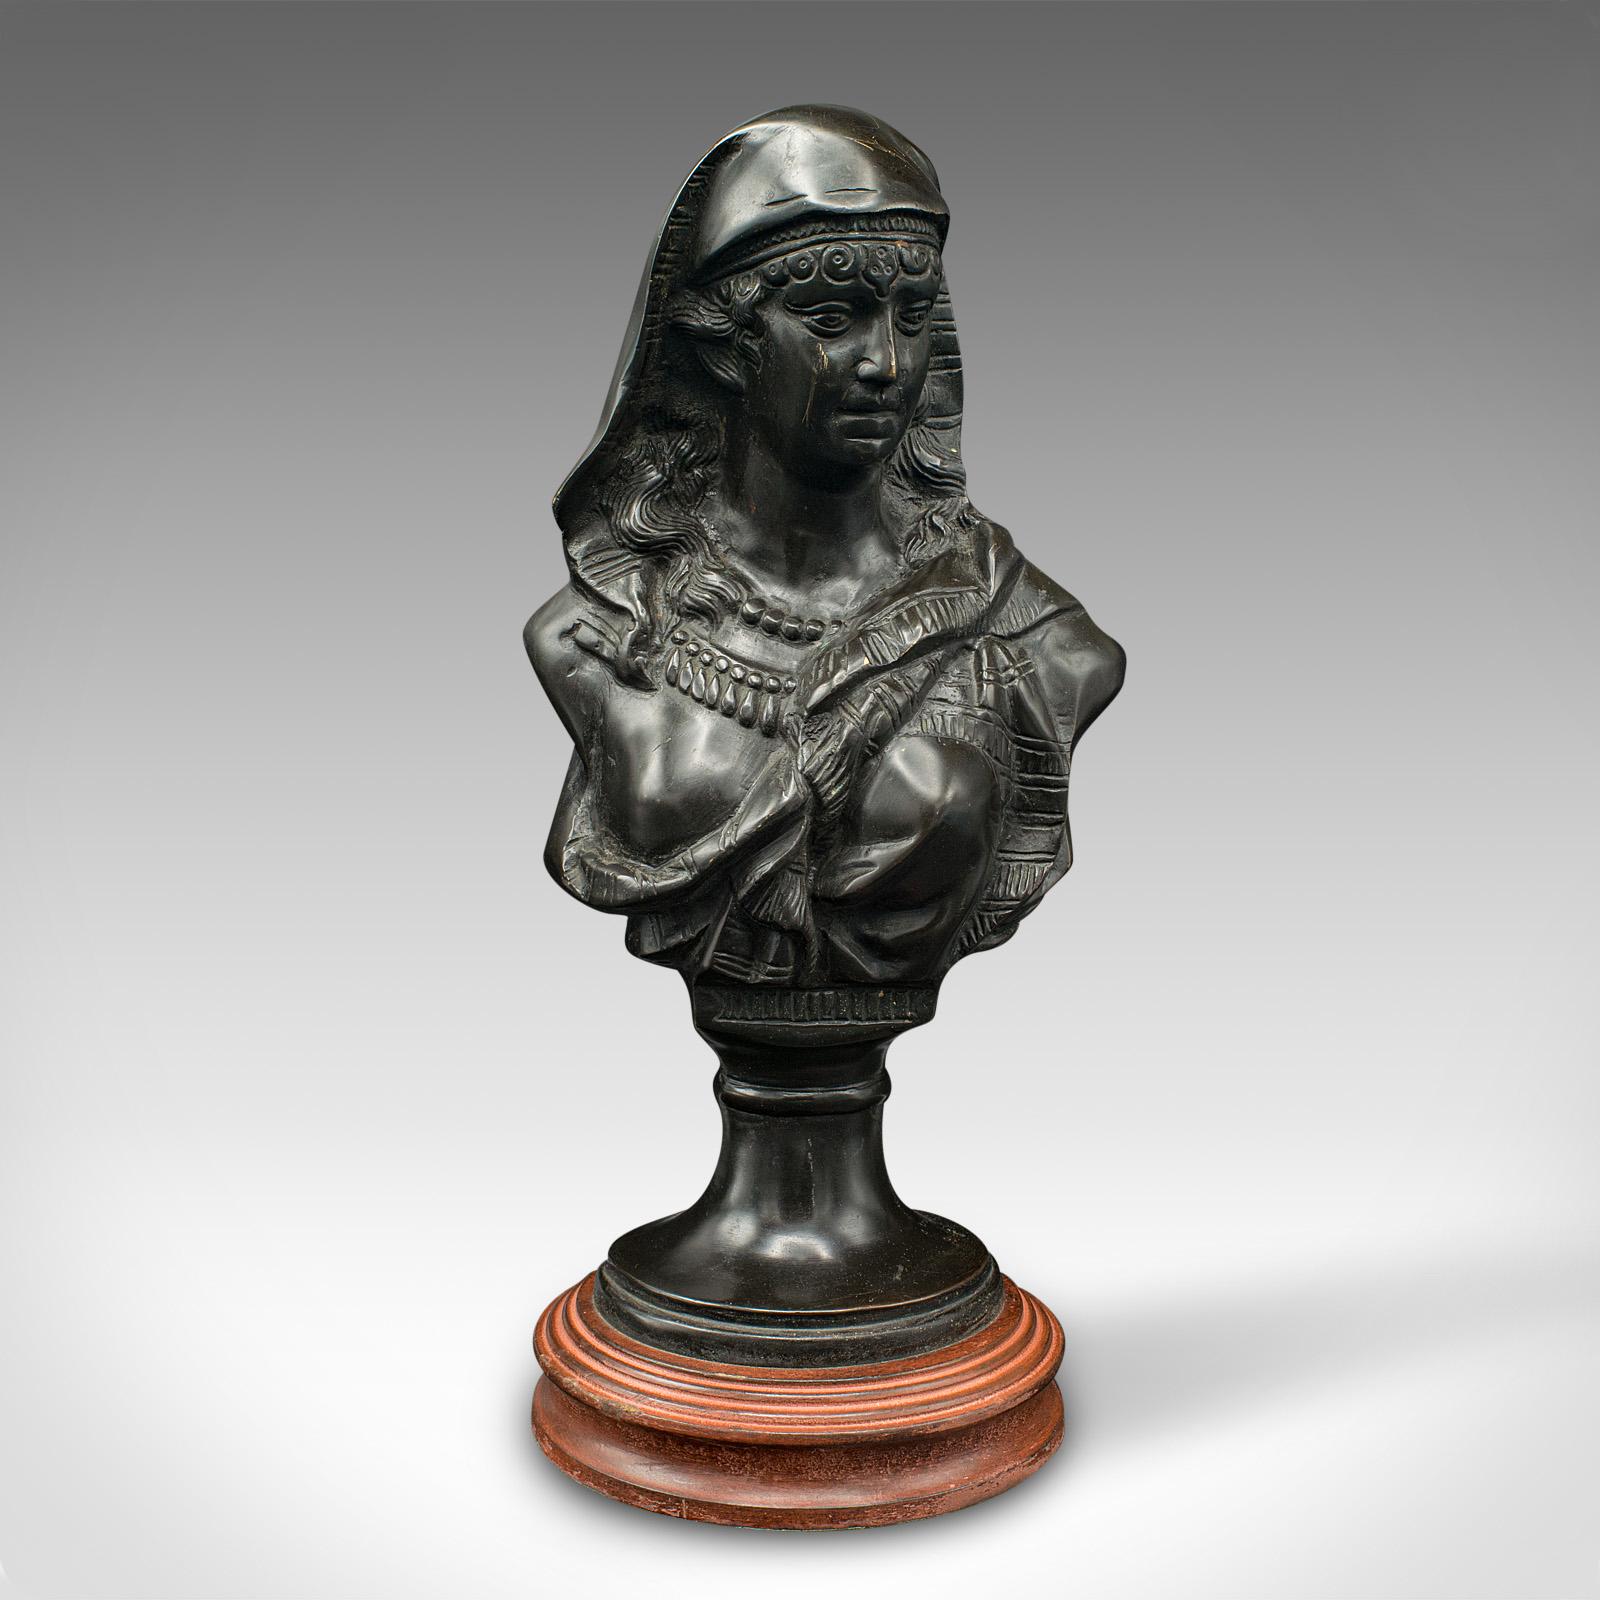 Dies ist eine antike Porträtbüste. Französische, dekorative weibliche Bronzestatue aus der späten viktorianischen Zeit, um 1900.

Auffallende Porträtbüste mit hervorragender Tonalität und Charakter
Zeigt eine wünschenswerte gealterte Patina und in